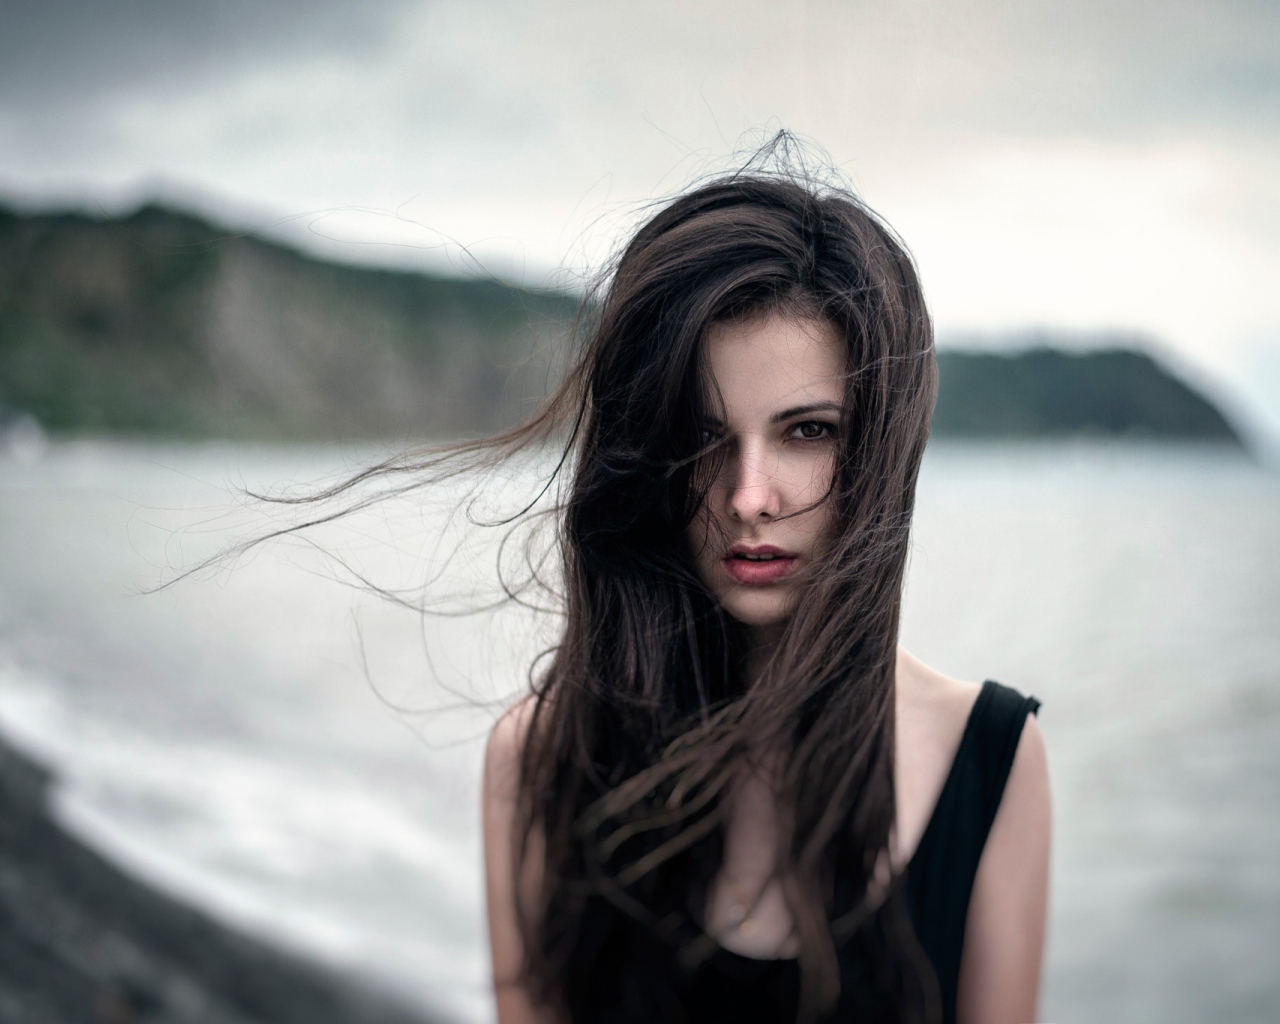 Ветер треплет волосы девушки у моря, портрет